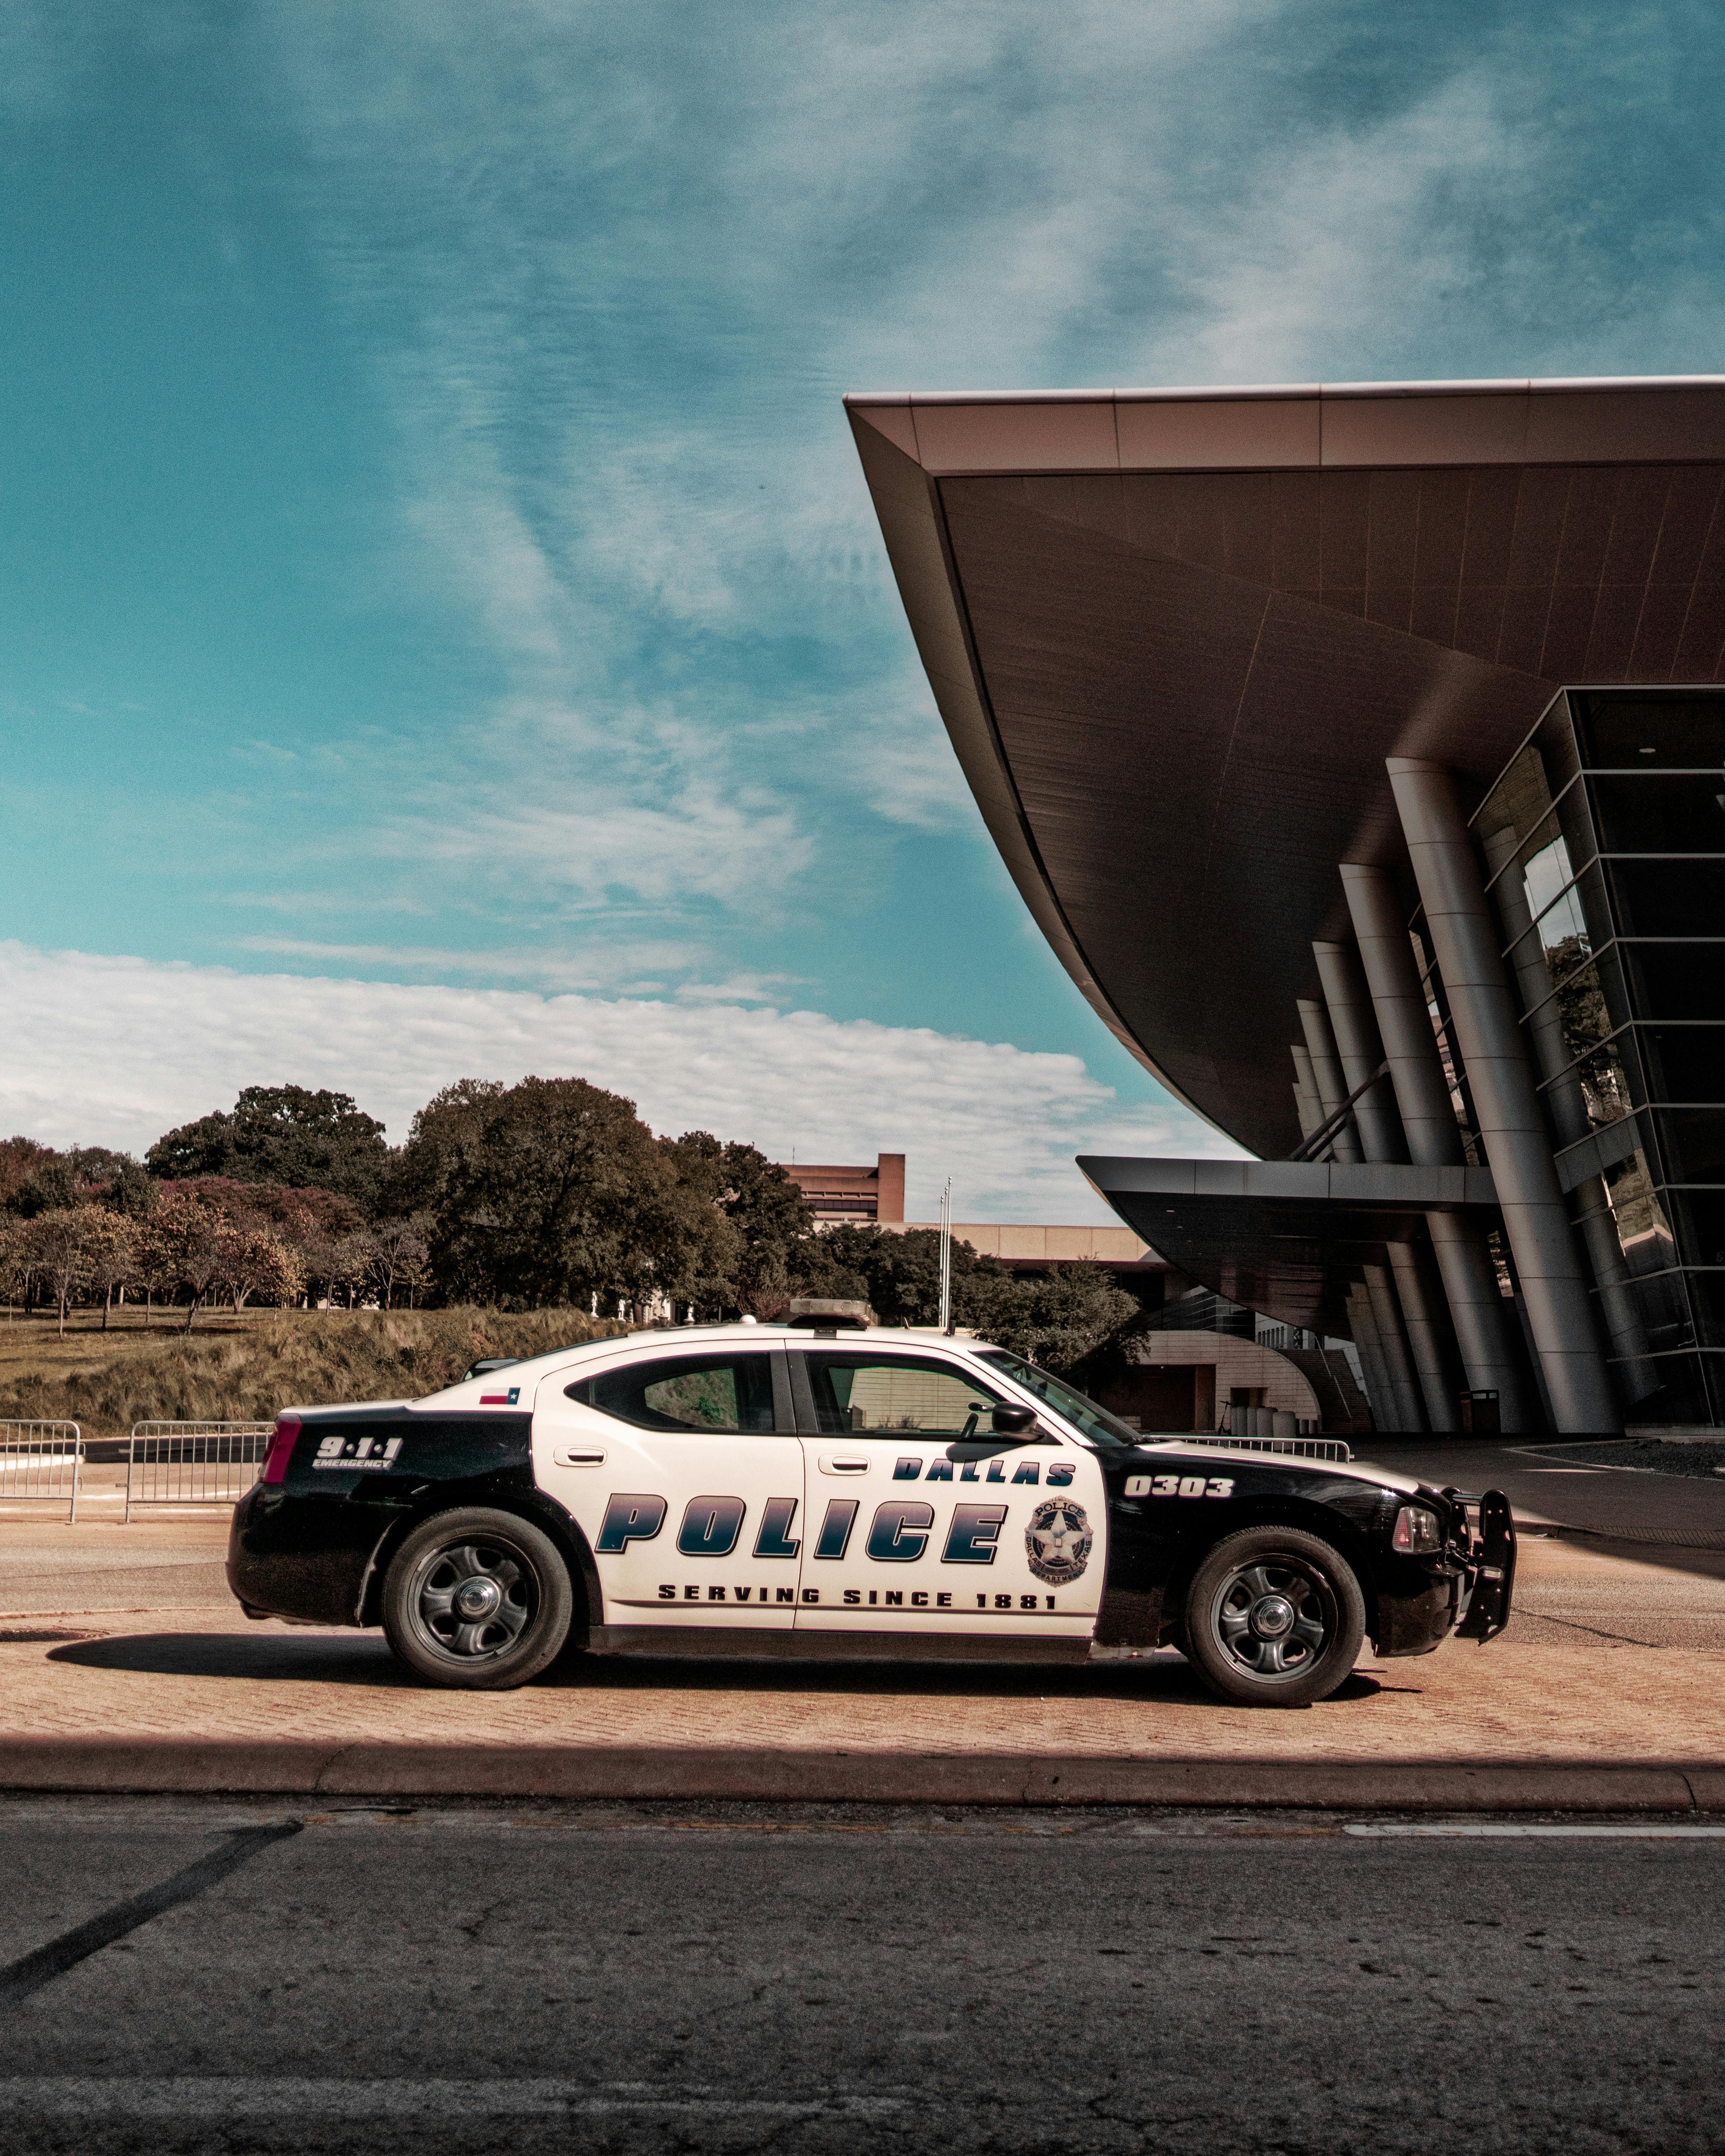 Un Automóvil de Policía aparcado en el exterior | Foto: Pexels